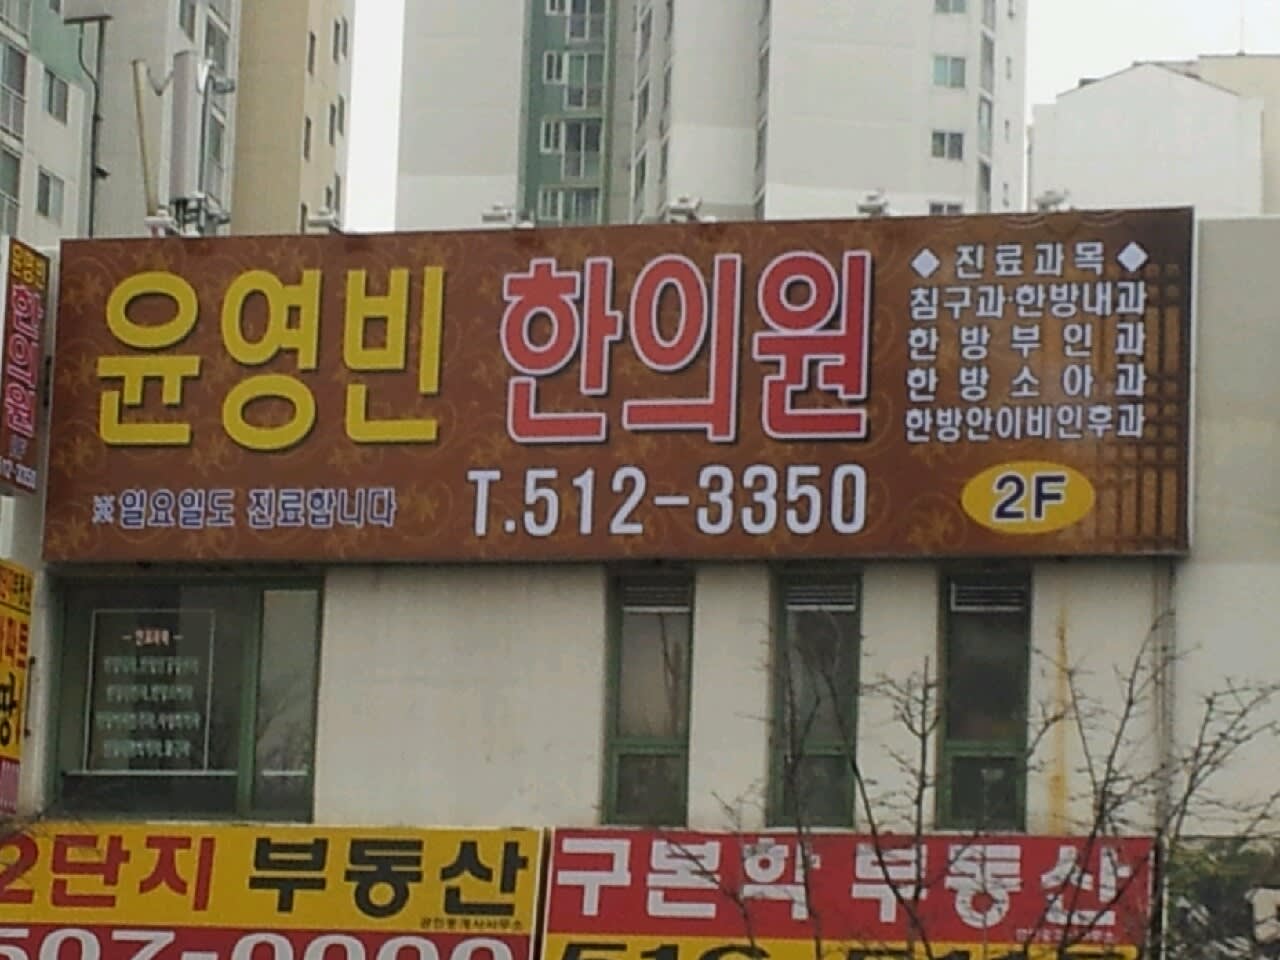 多仁韓医院 ユンヨンヒ ン韓医院に 名前をかえて 引越しました ユンヨンビン 韓医院